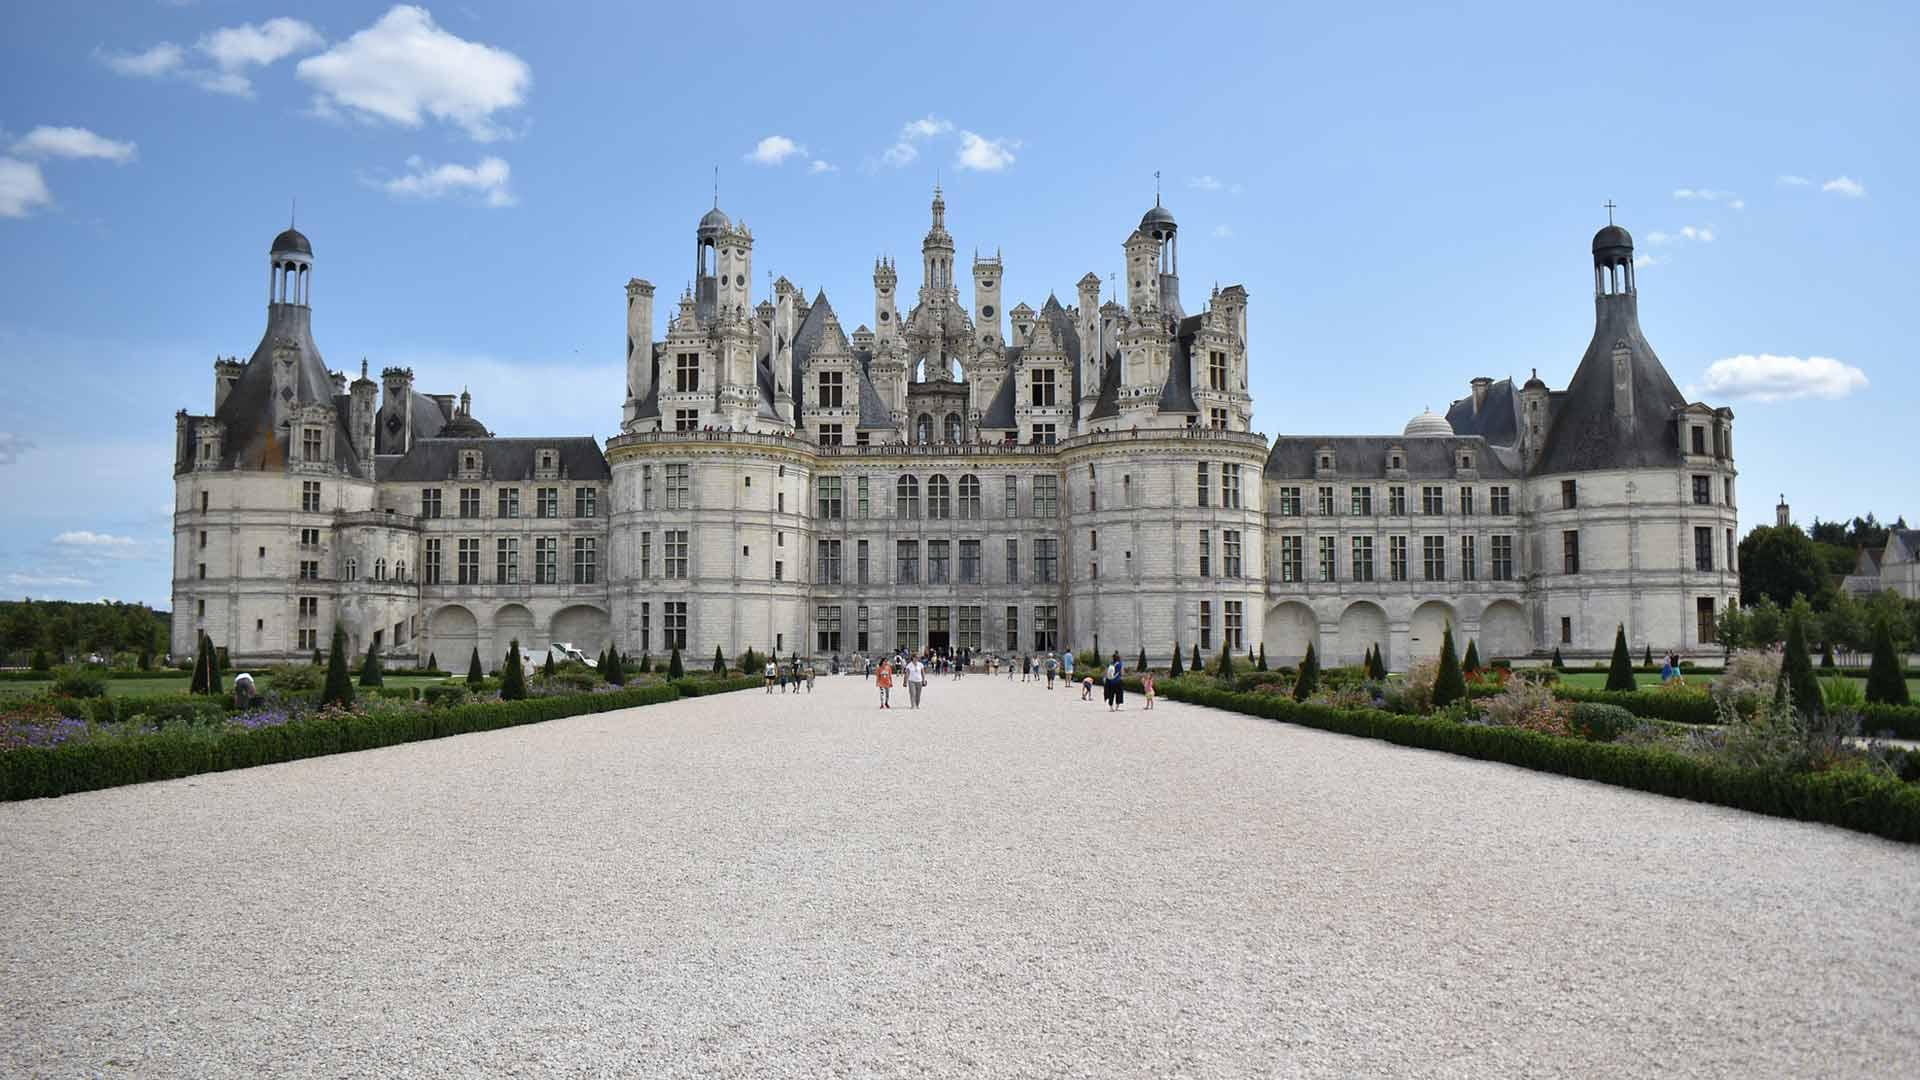 Profitez des campings Siblu pour visiter les châteaux de la Loire 